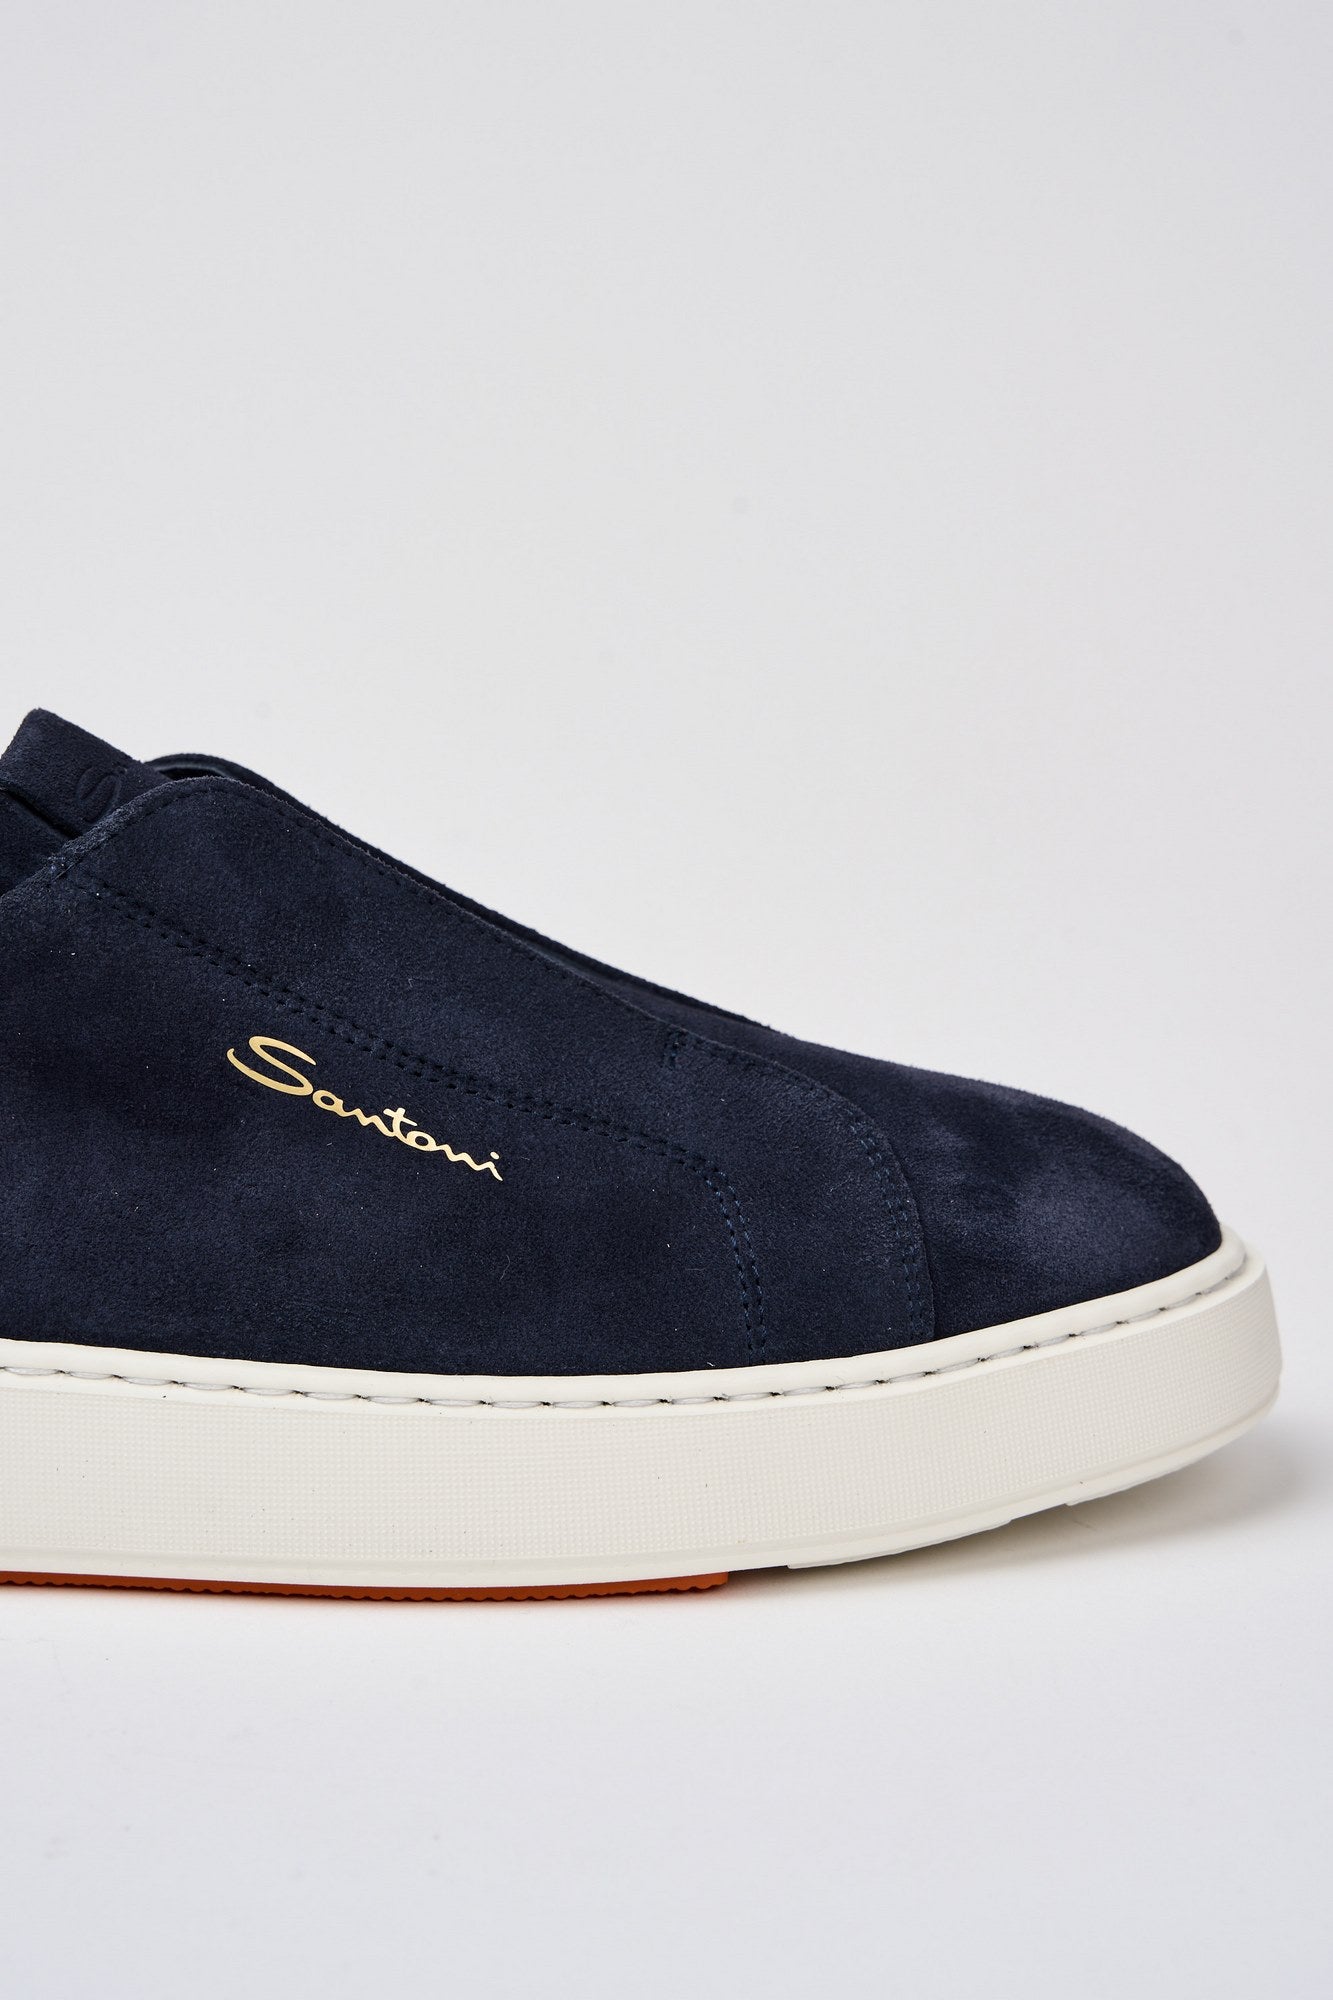 Santoni Slip On Suede Sneakers in Blue-4